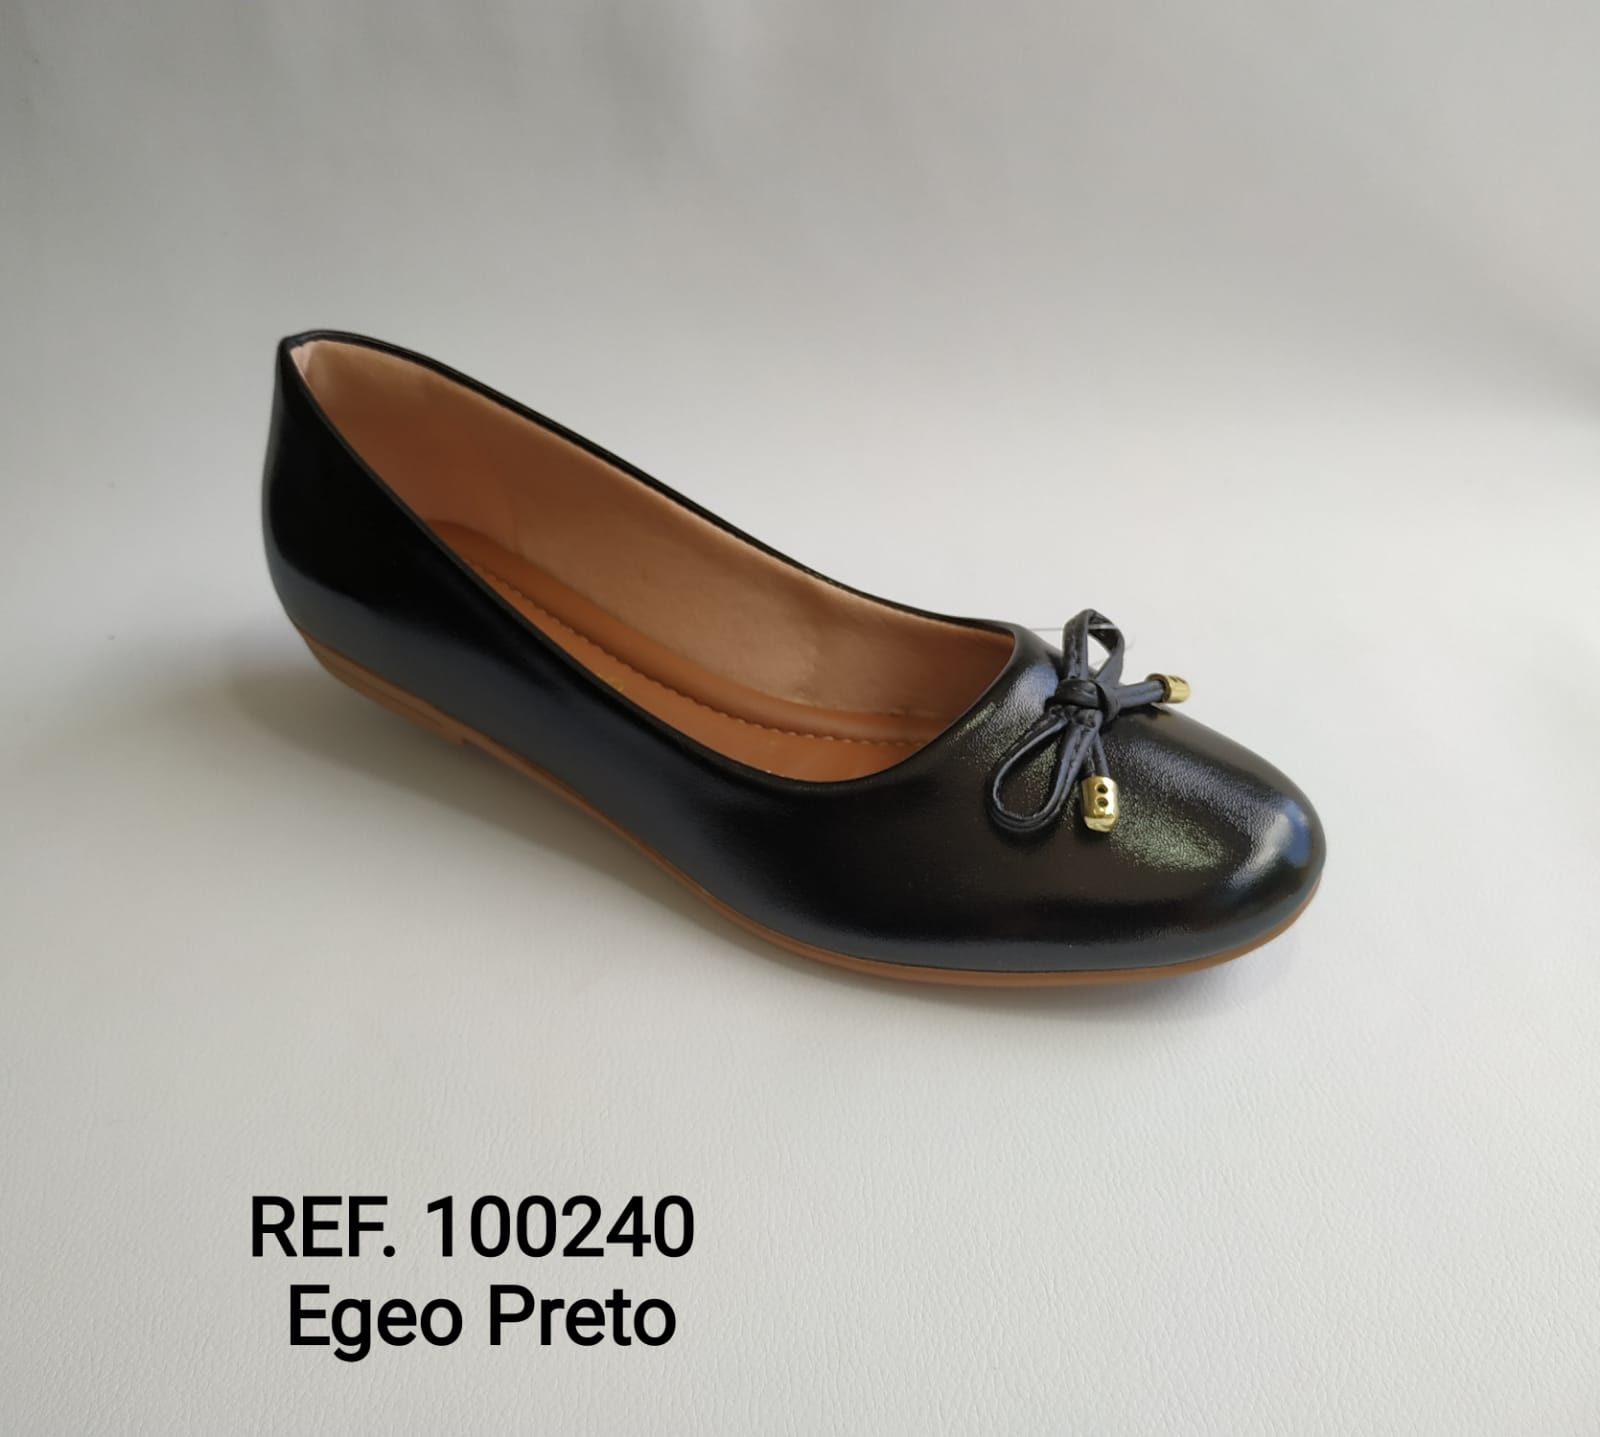 Ref. 100240 Egeo Preto